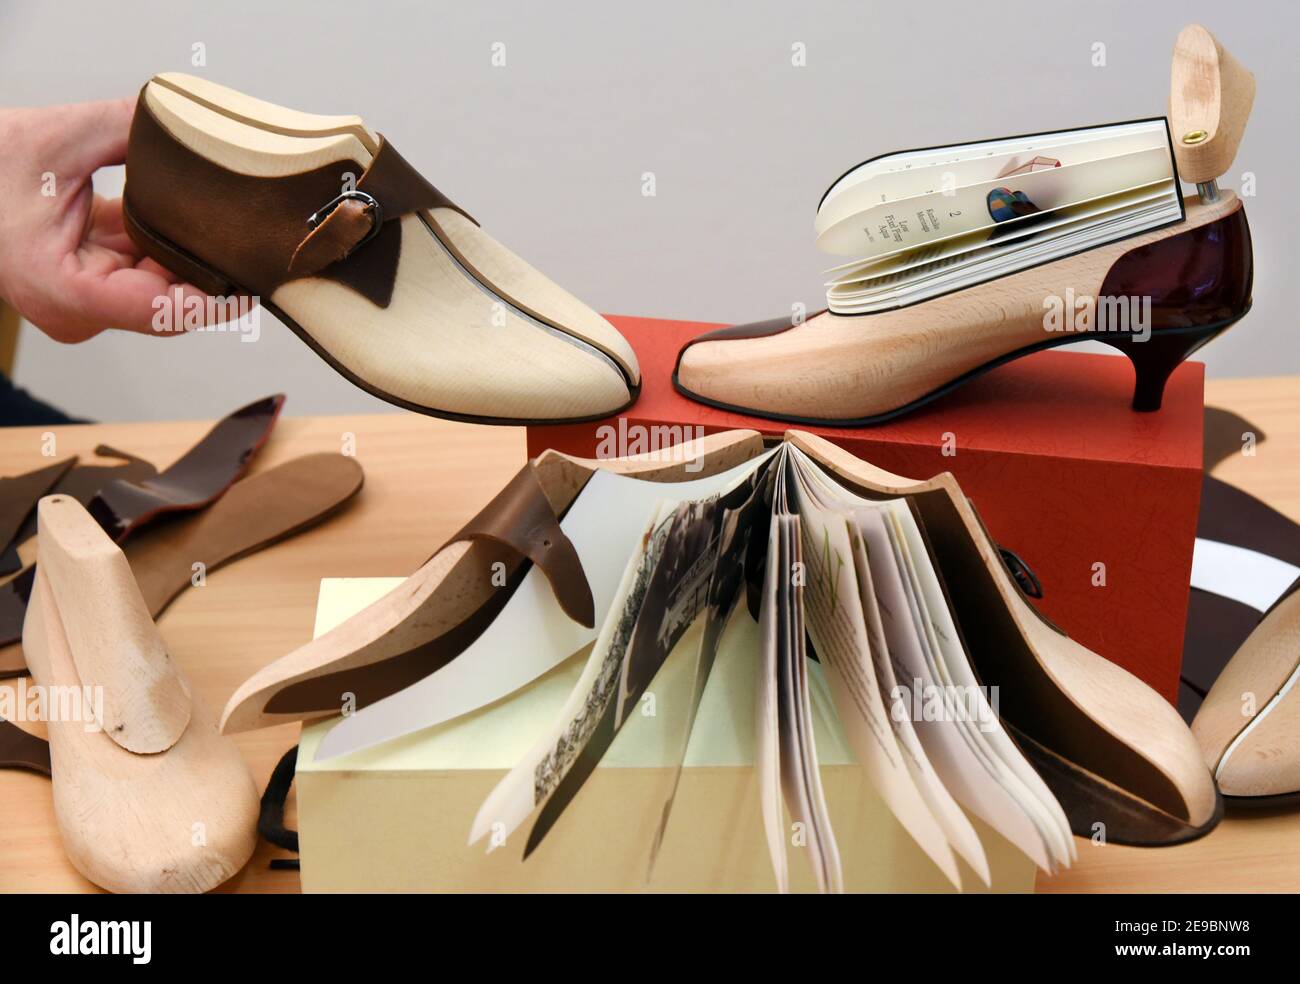 Leipzig, Alemania. El 2 de febrero de 2021. Curiosos libros de zapatos  yacen en una mesa en la editorial Faber & Faber Leipzig. El zapato de  libro, que también incluye un libro